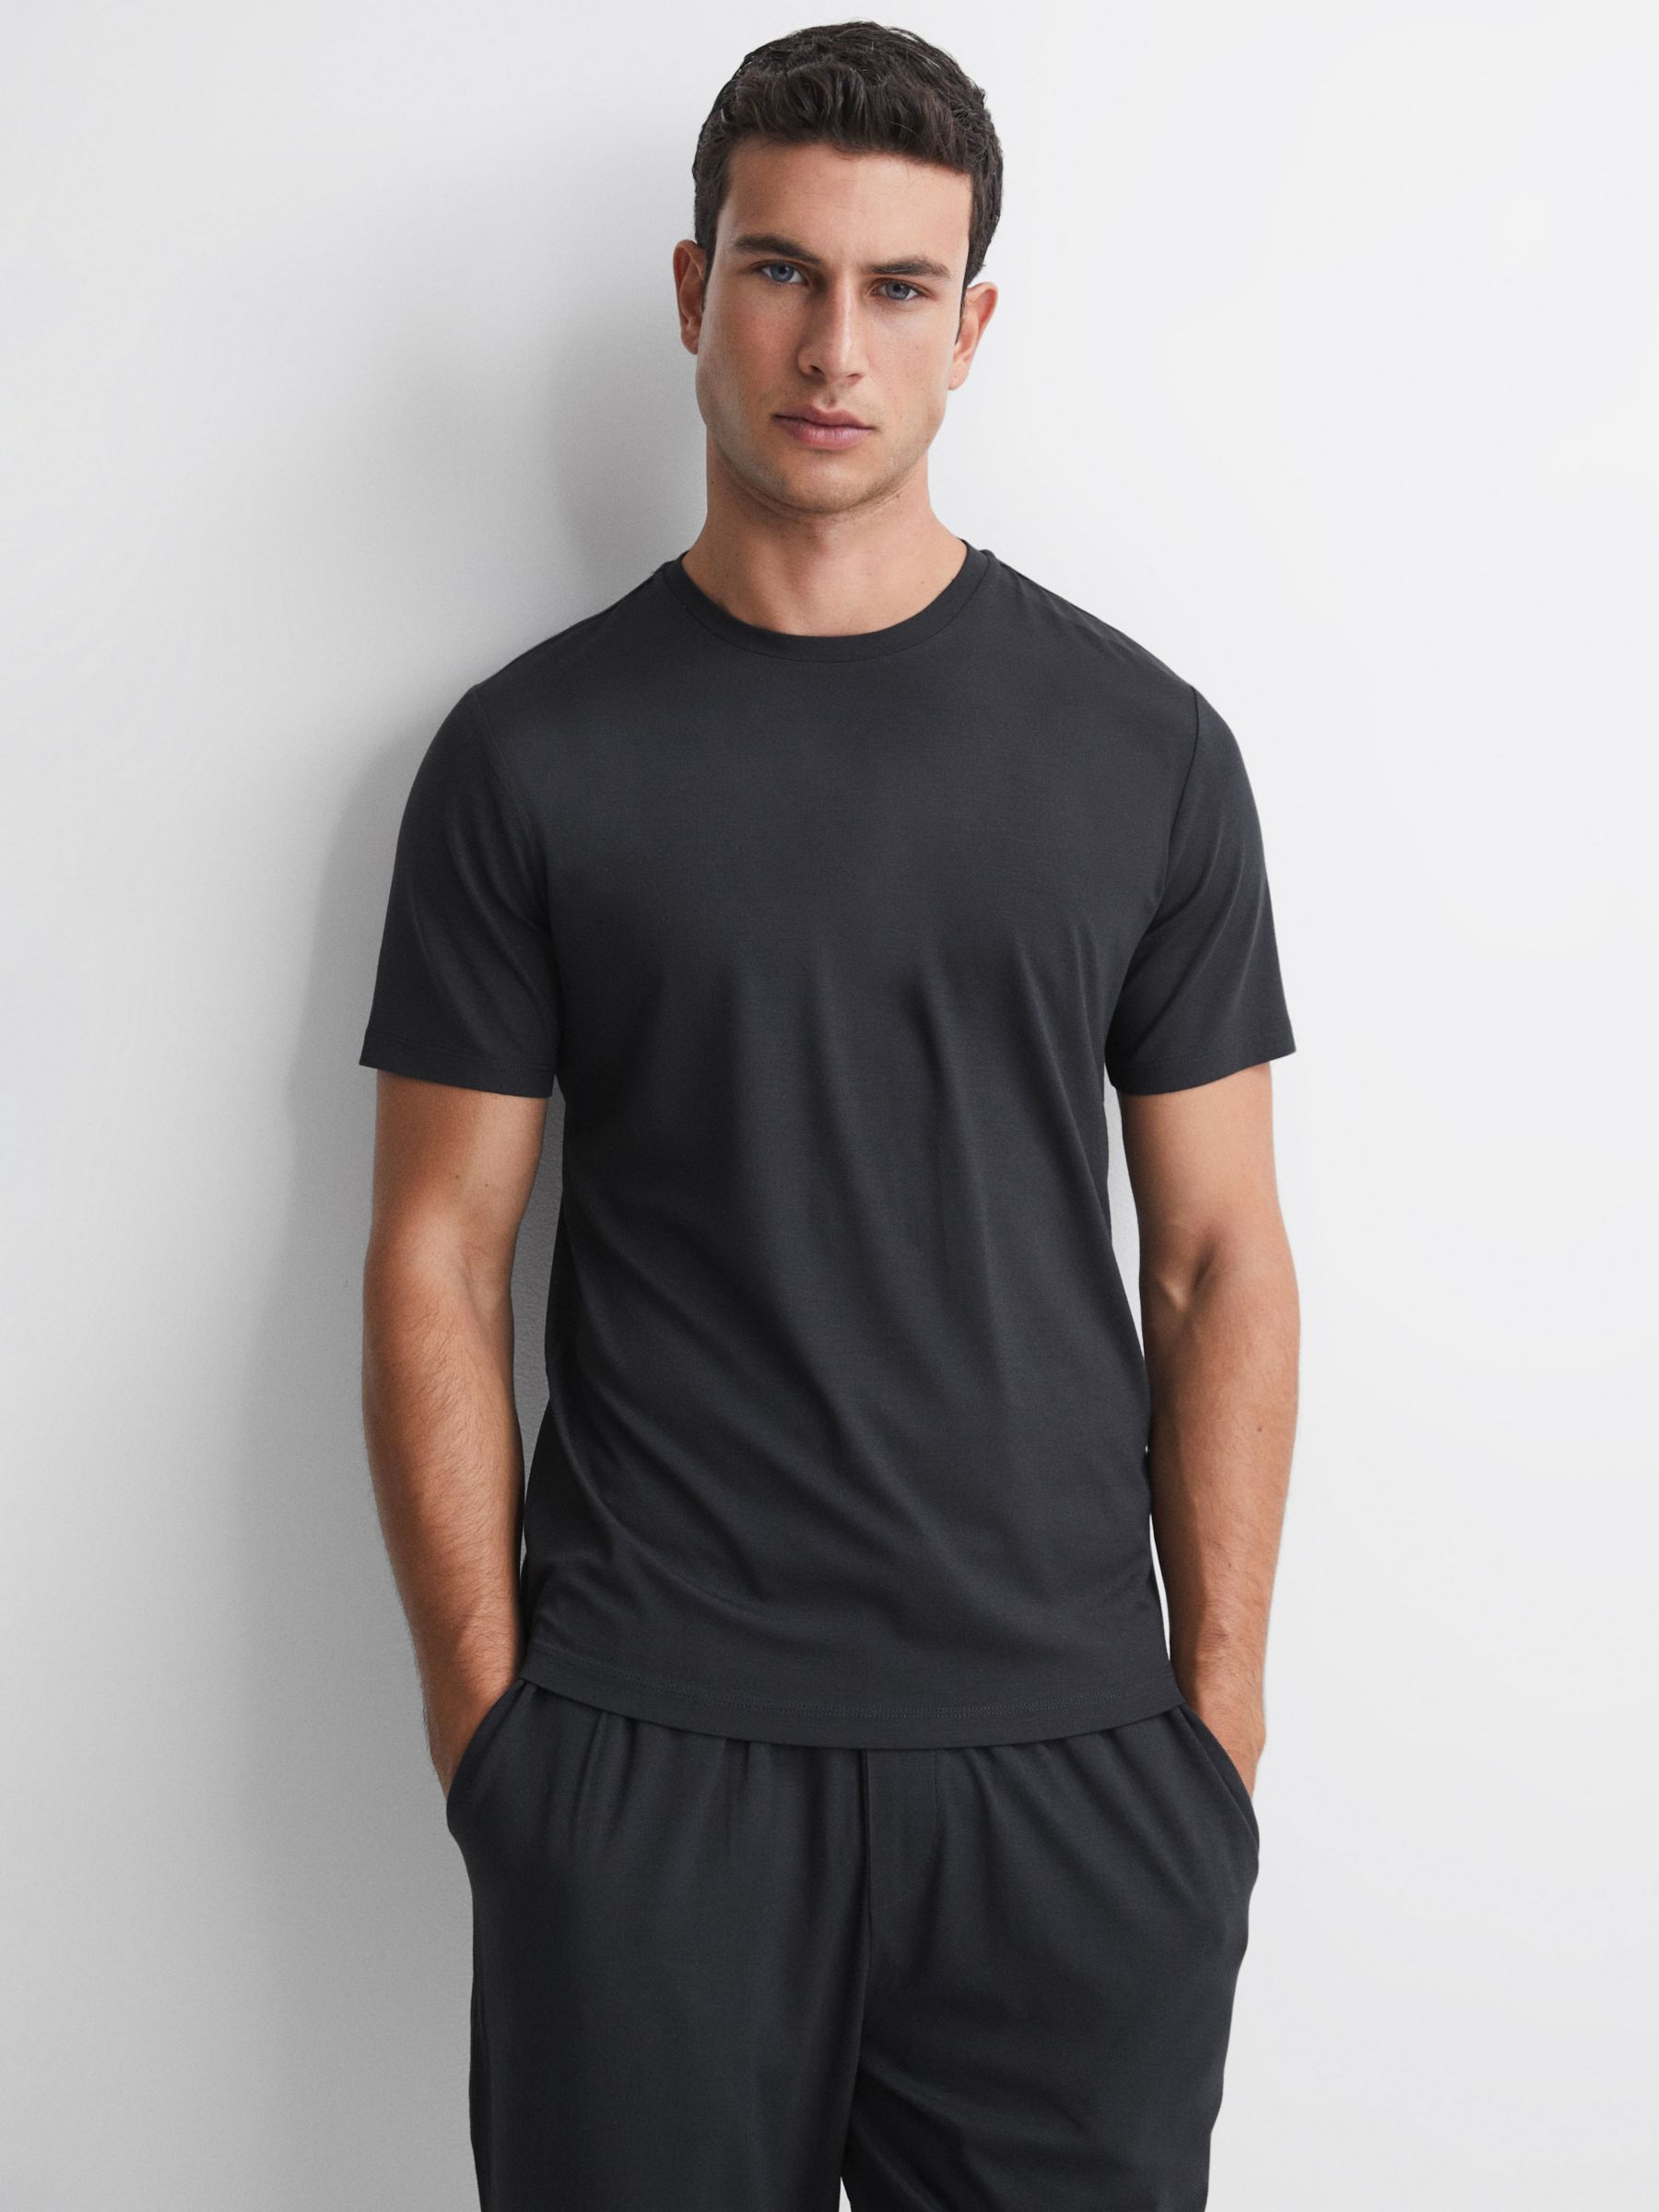 Reiss Holt Short Sleeve Jersey T-Shirt, Charcoal, XS